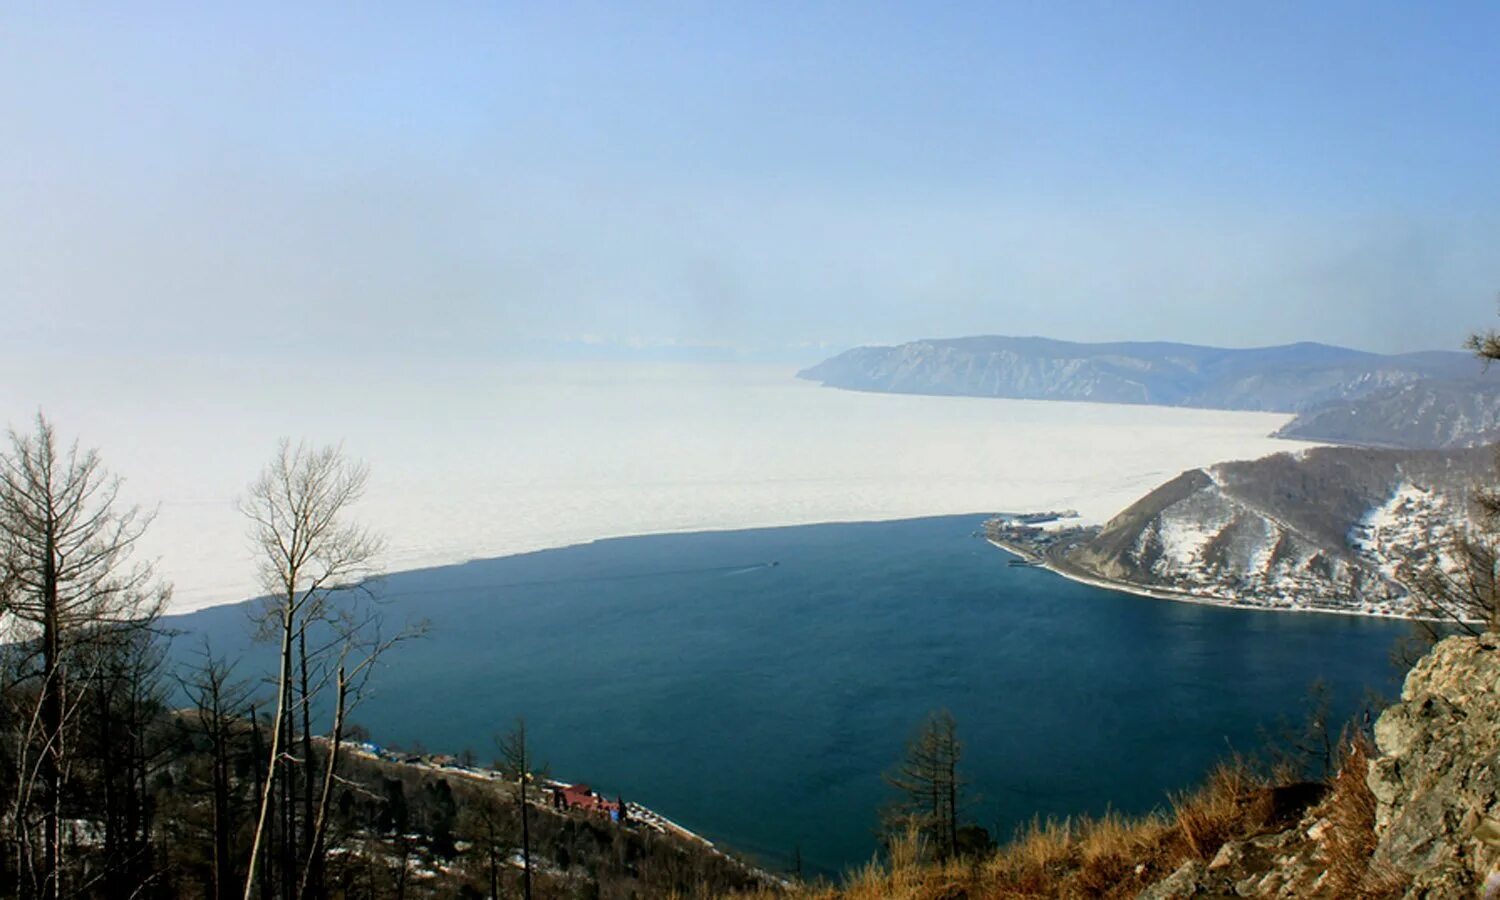 Река Ангара Байкал. Исток ангары озеро Байкал. Исток реки ангары из Байкала. Исток реки Ангара.